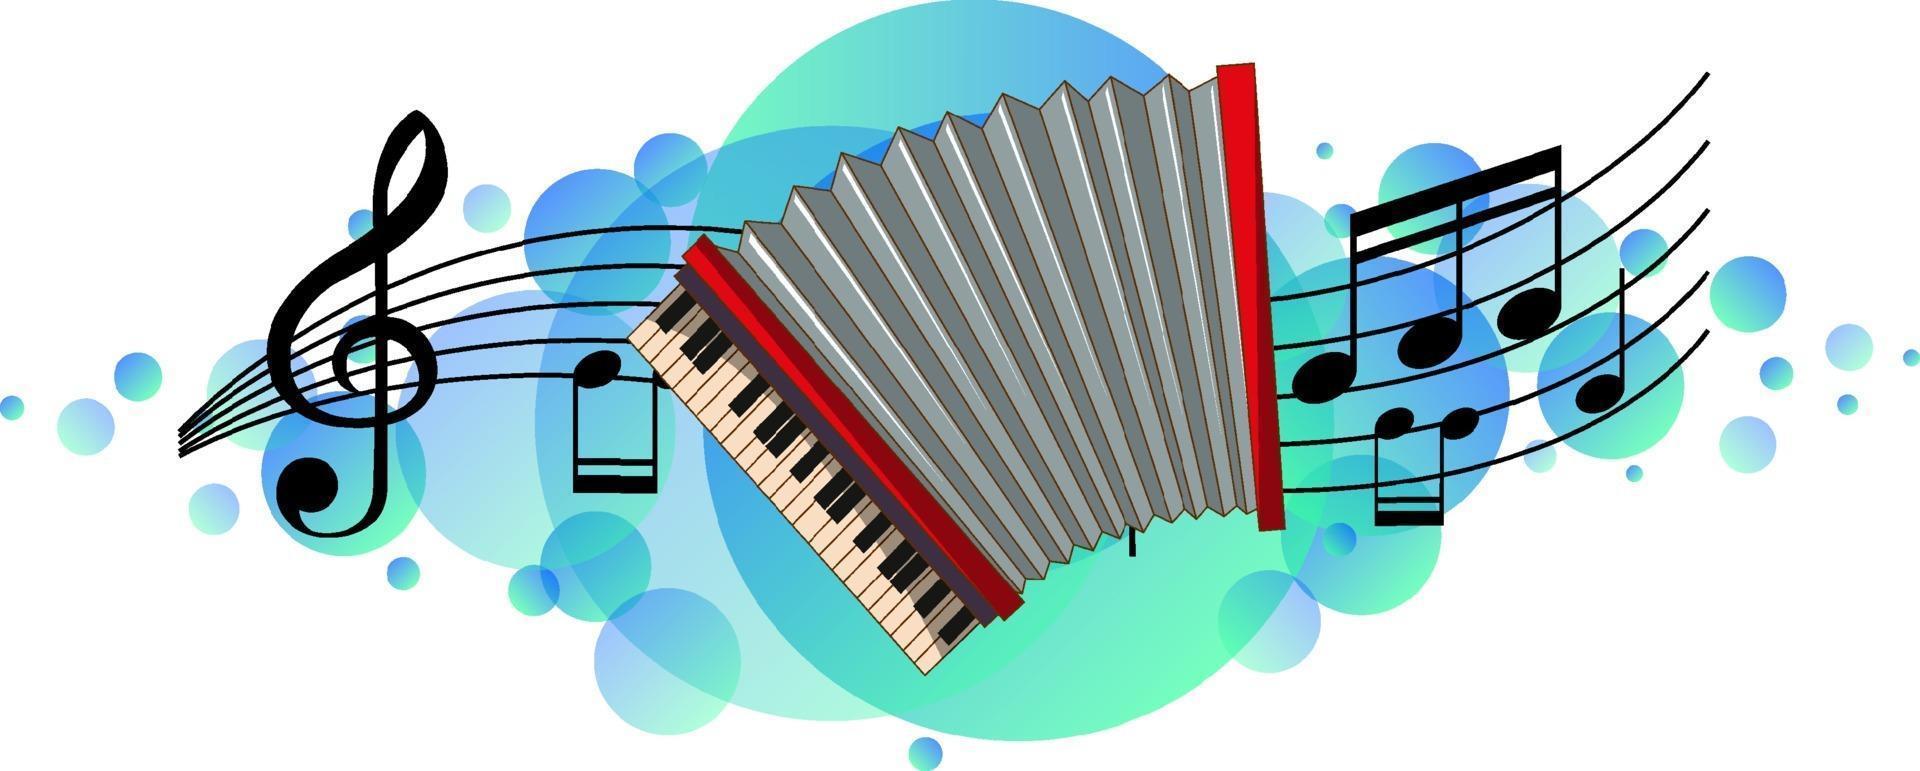 accordeon muziekinstrument met melodiesymbolen op hemelsblauwe splotch vector